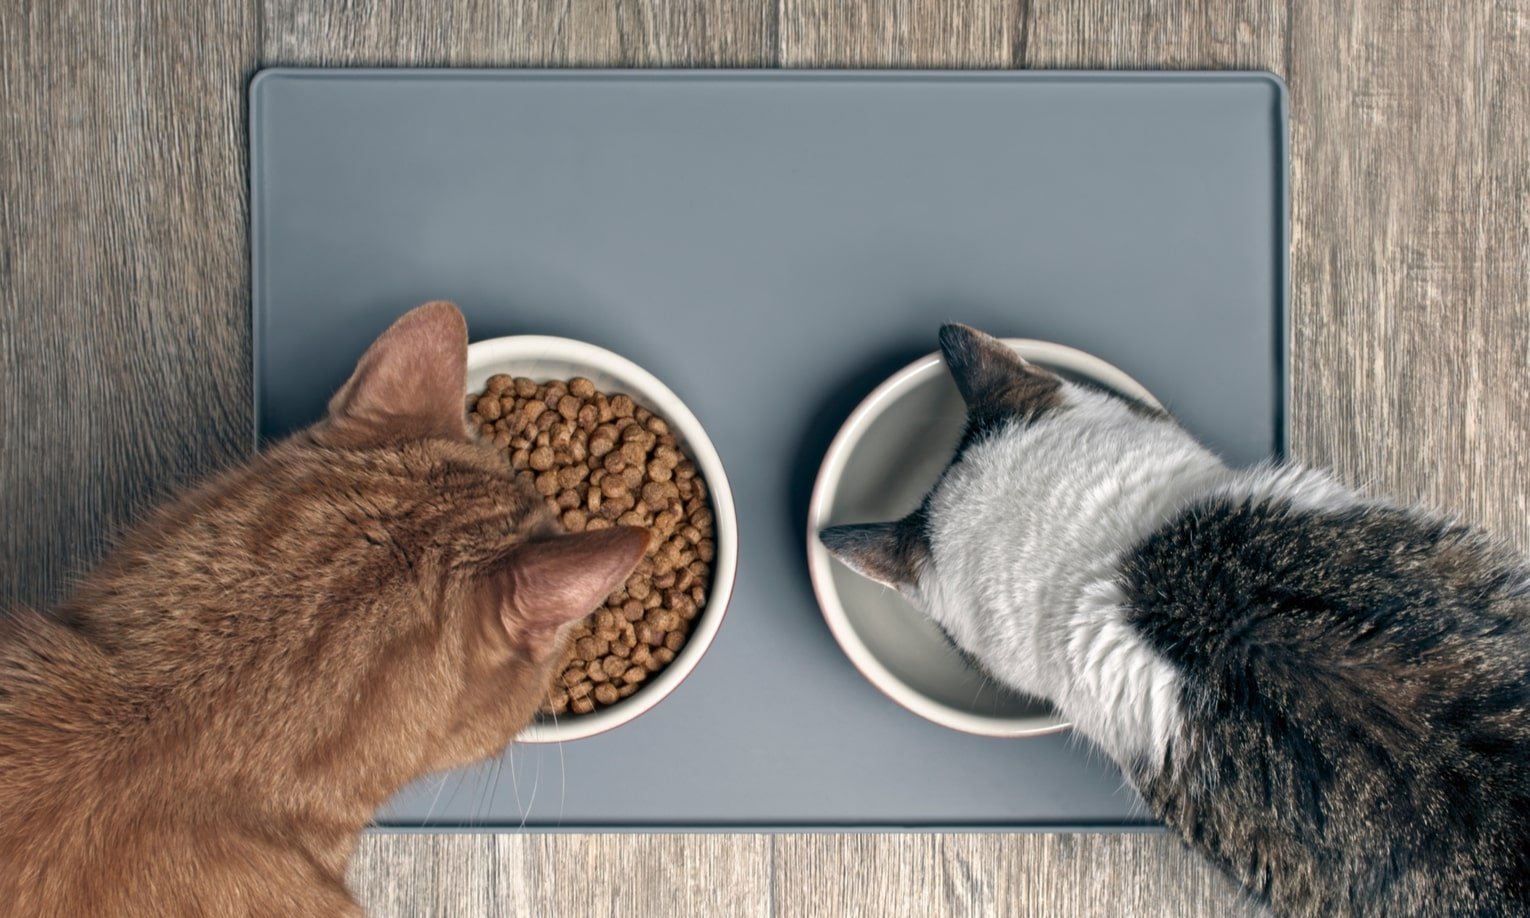 две кошки едят со своих мисок